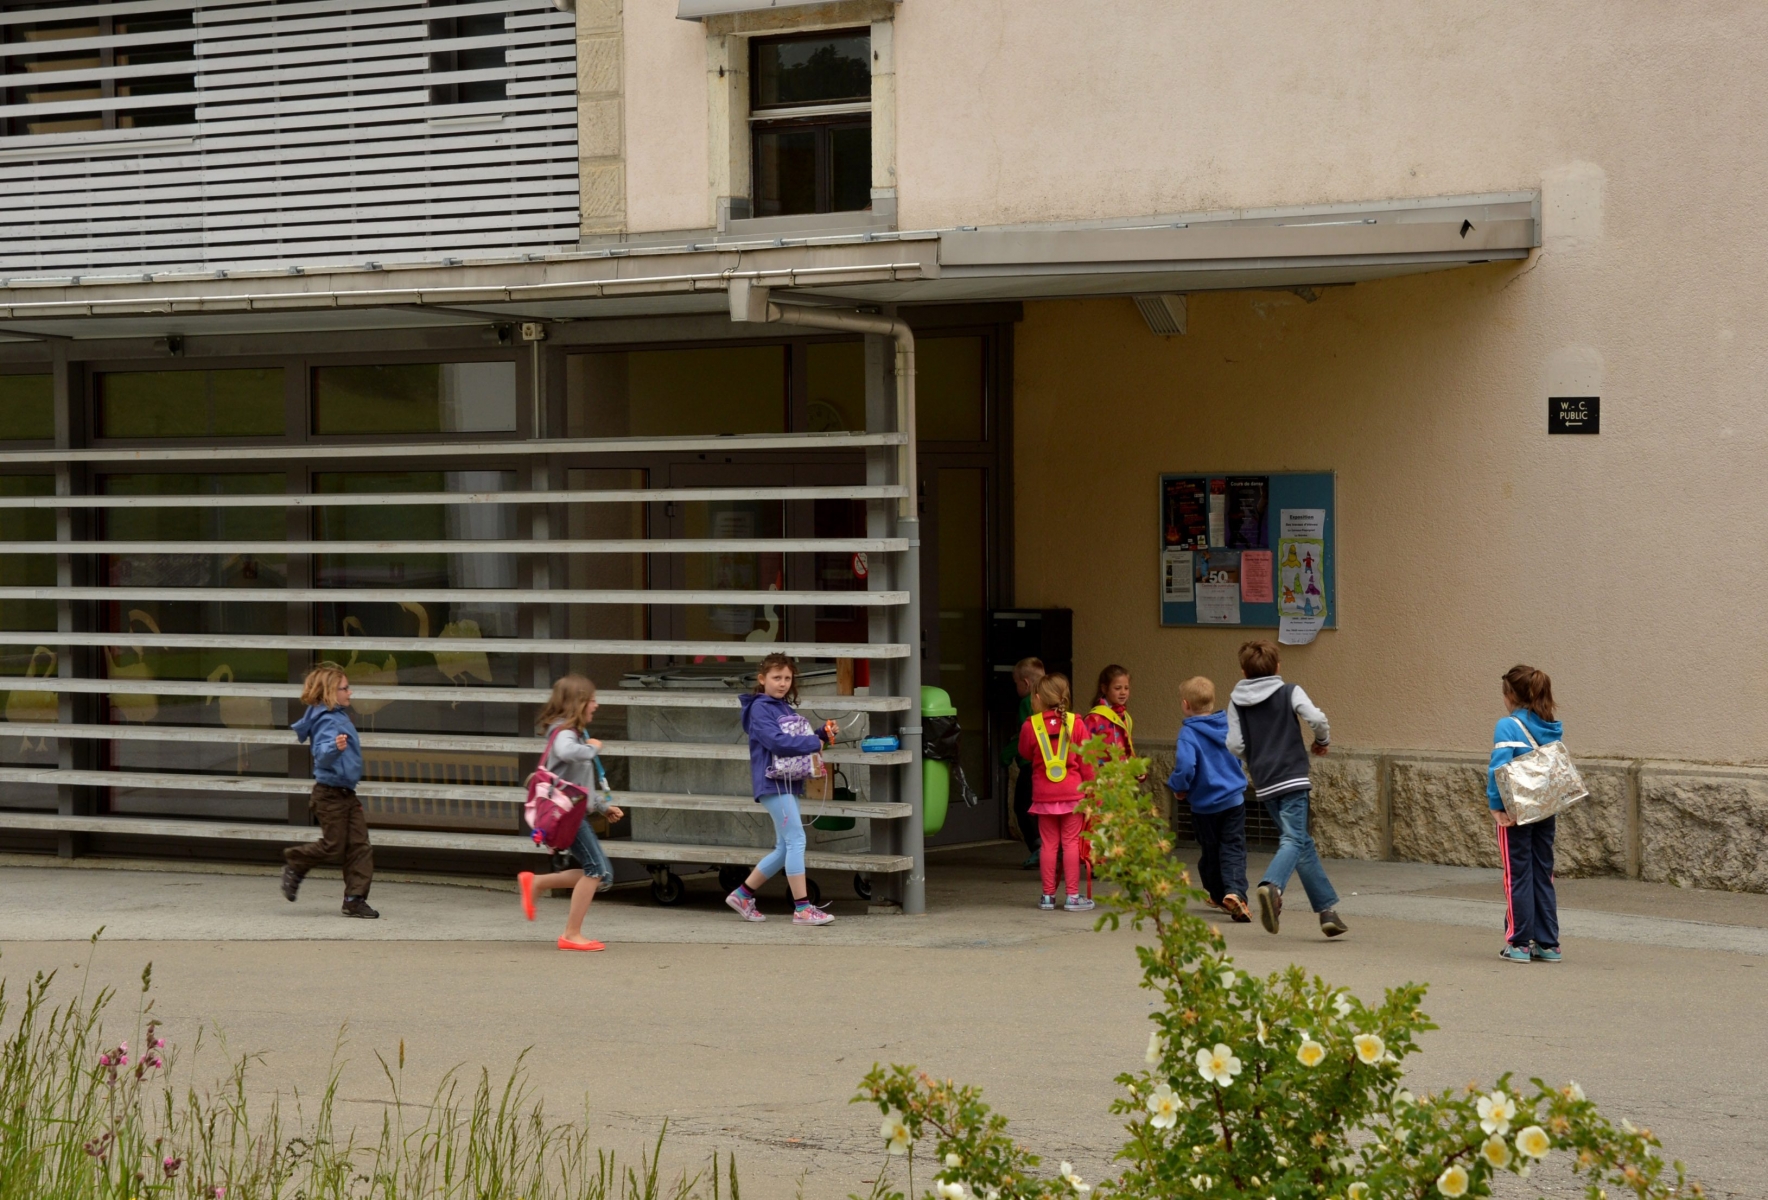 Les eleves chauliers resteront scolarisés dans leur village.
La Chaux du Milieu 25 juin 2013
Photo R Leuenberger